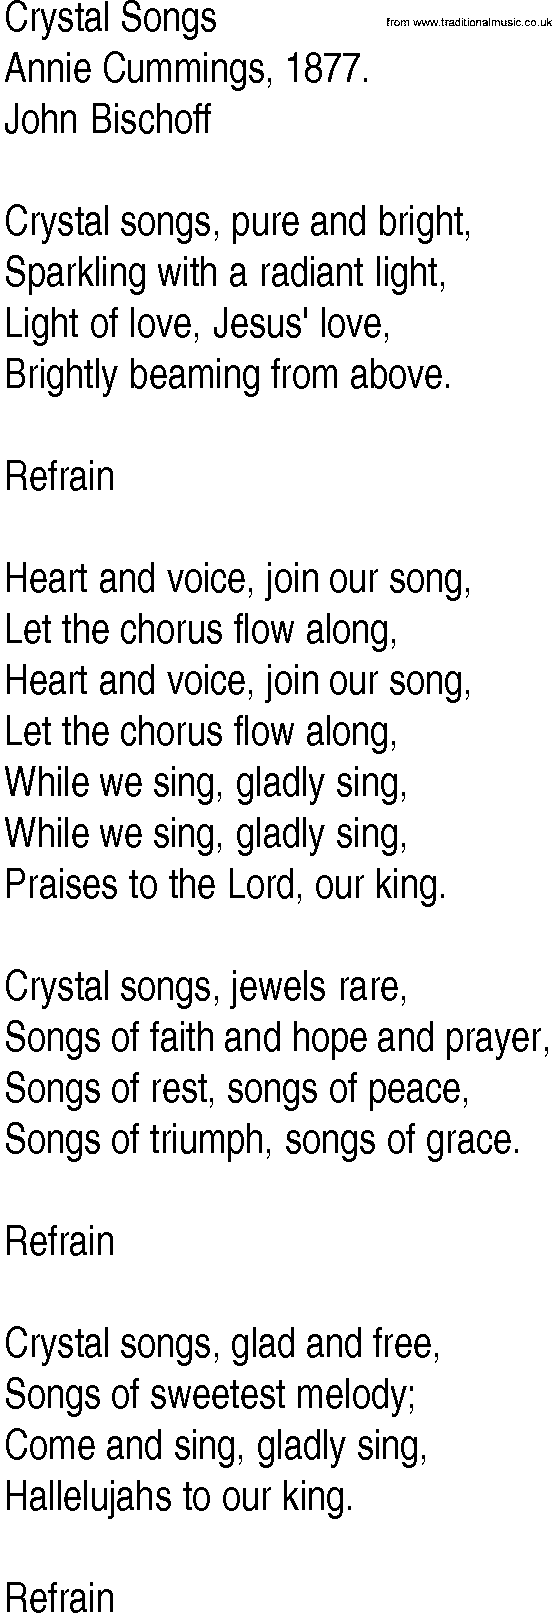 Hymn and Gospel Song: Crystal Songs by Annie Cummings lyrics